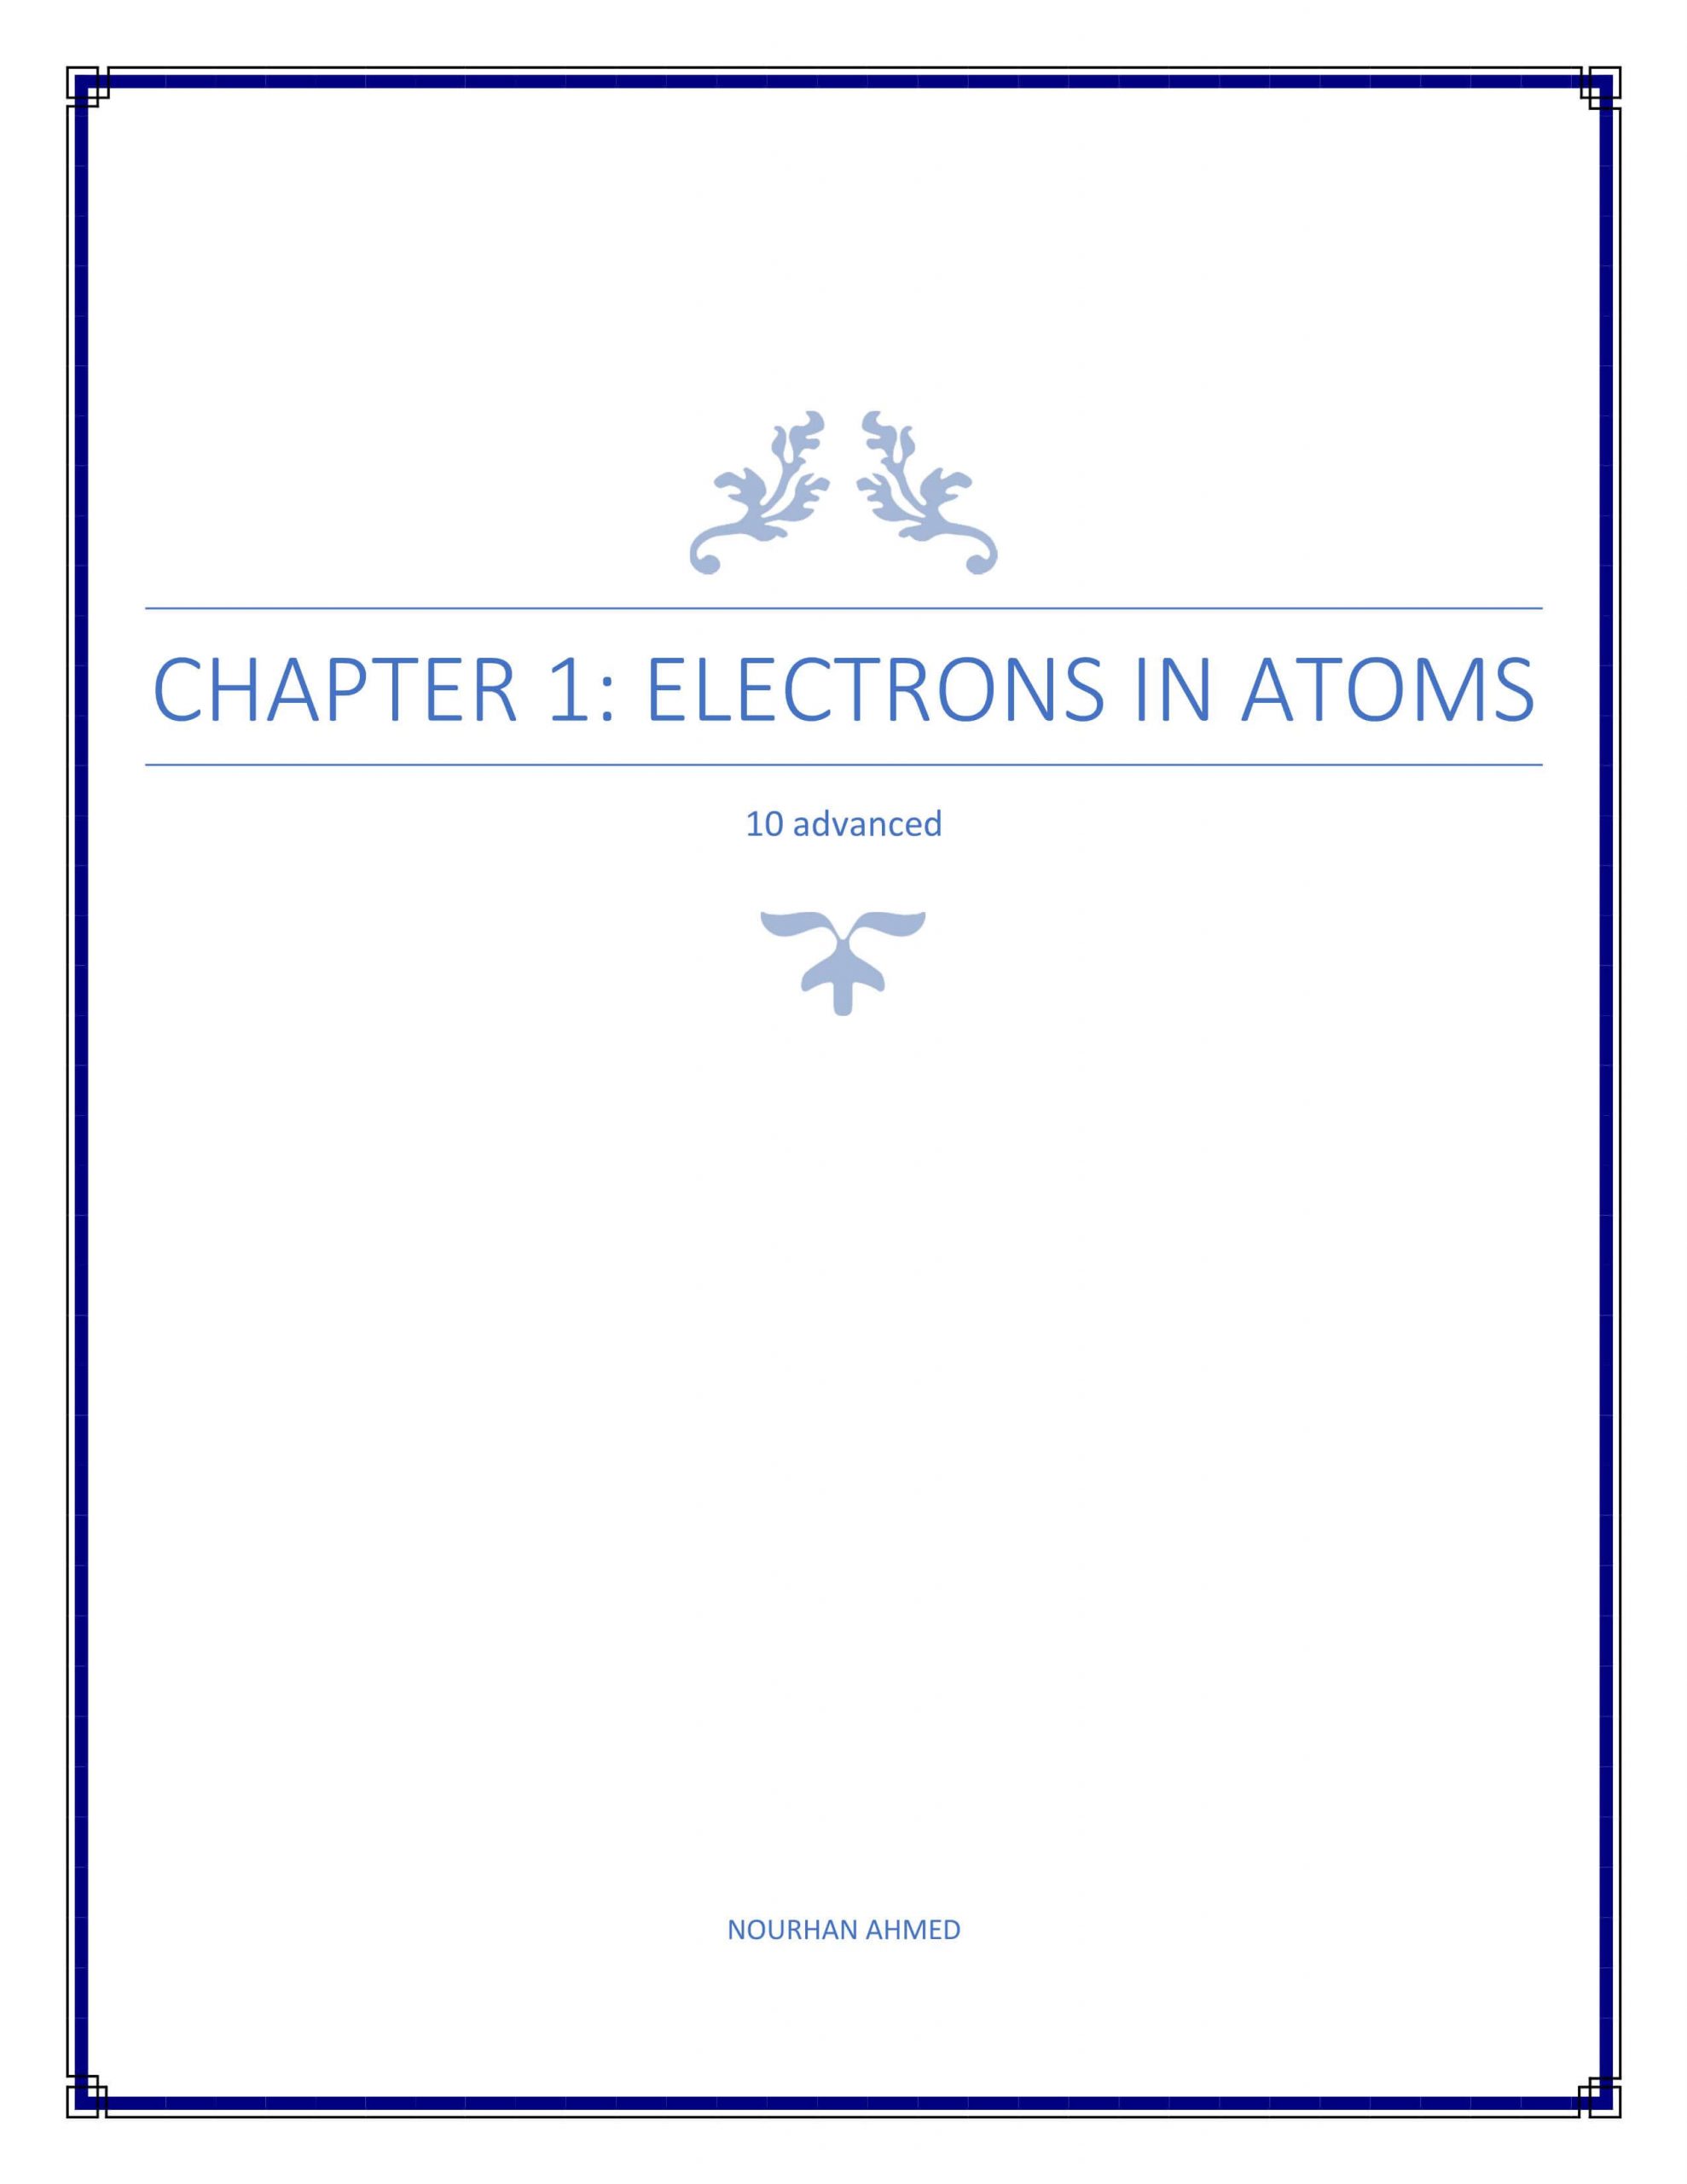 ملخص ELECTRONS IN ATOMS بالانجليزي الصف العاشر متقدم مادة الكيمياء